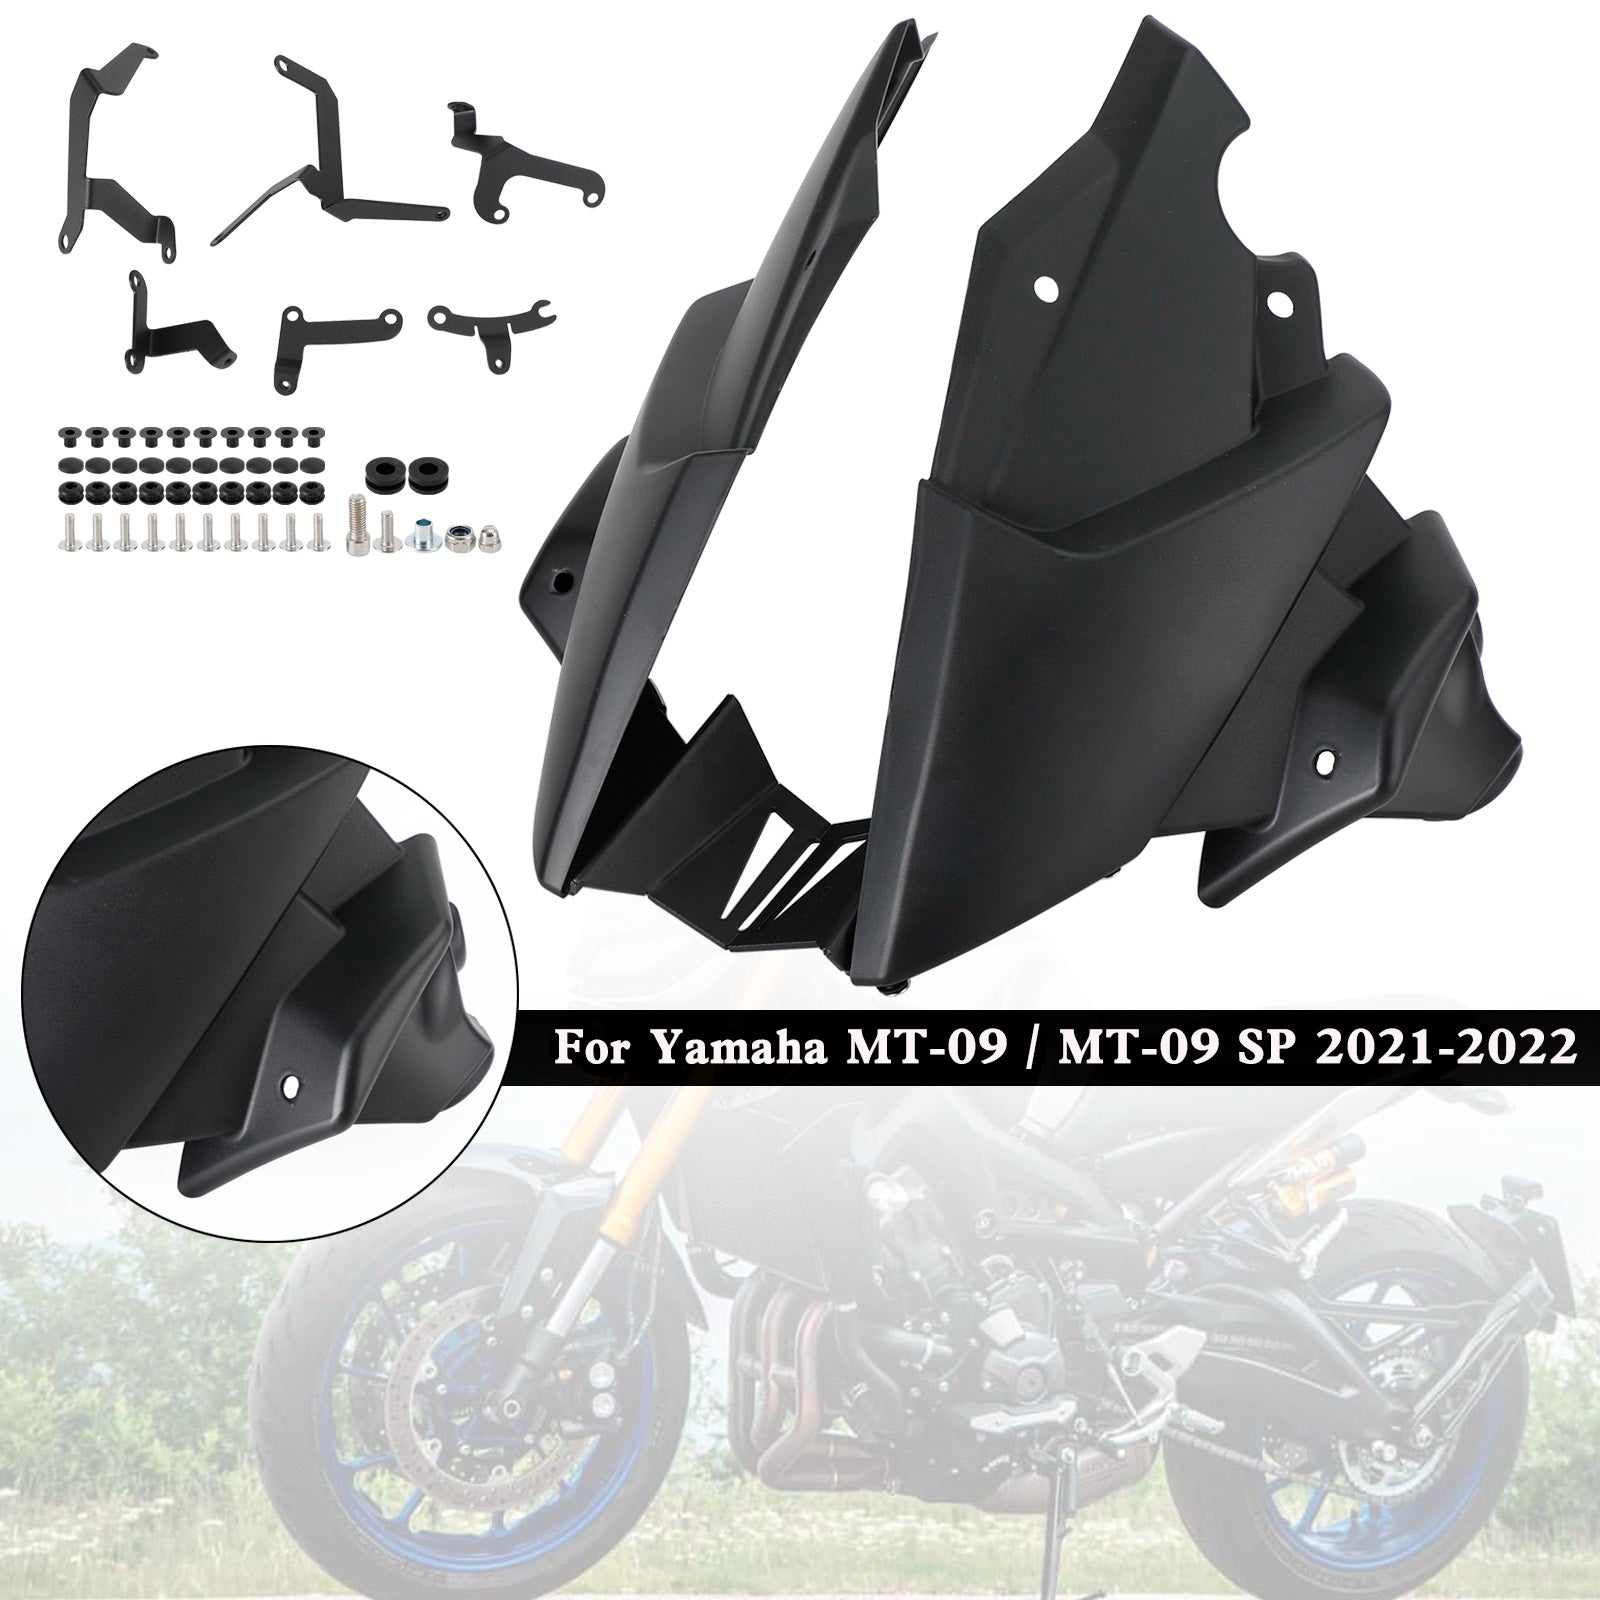 Ermax Belly Pan Untere Motorseitenverkleidung für Yamaha MT-09 / SP 2021-2022